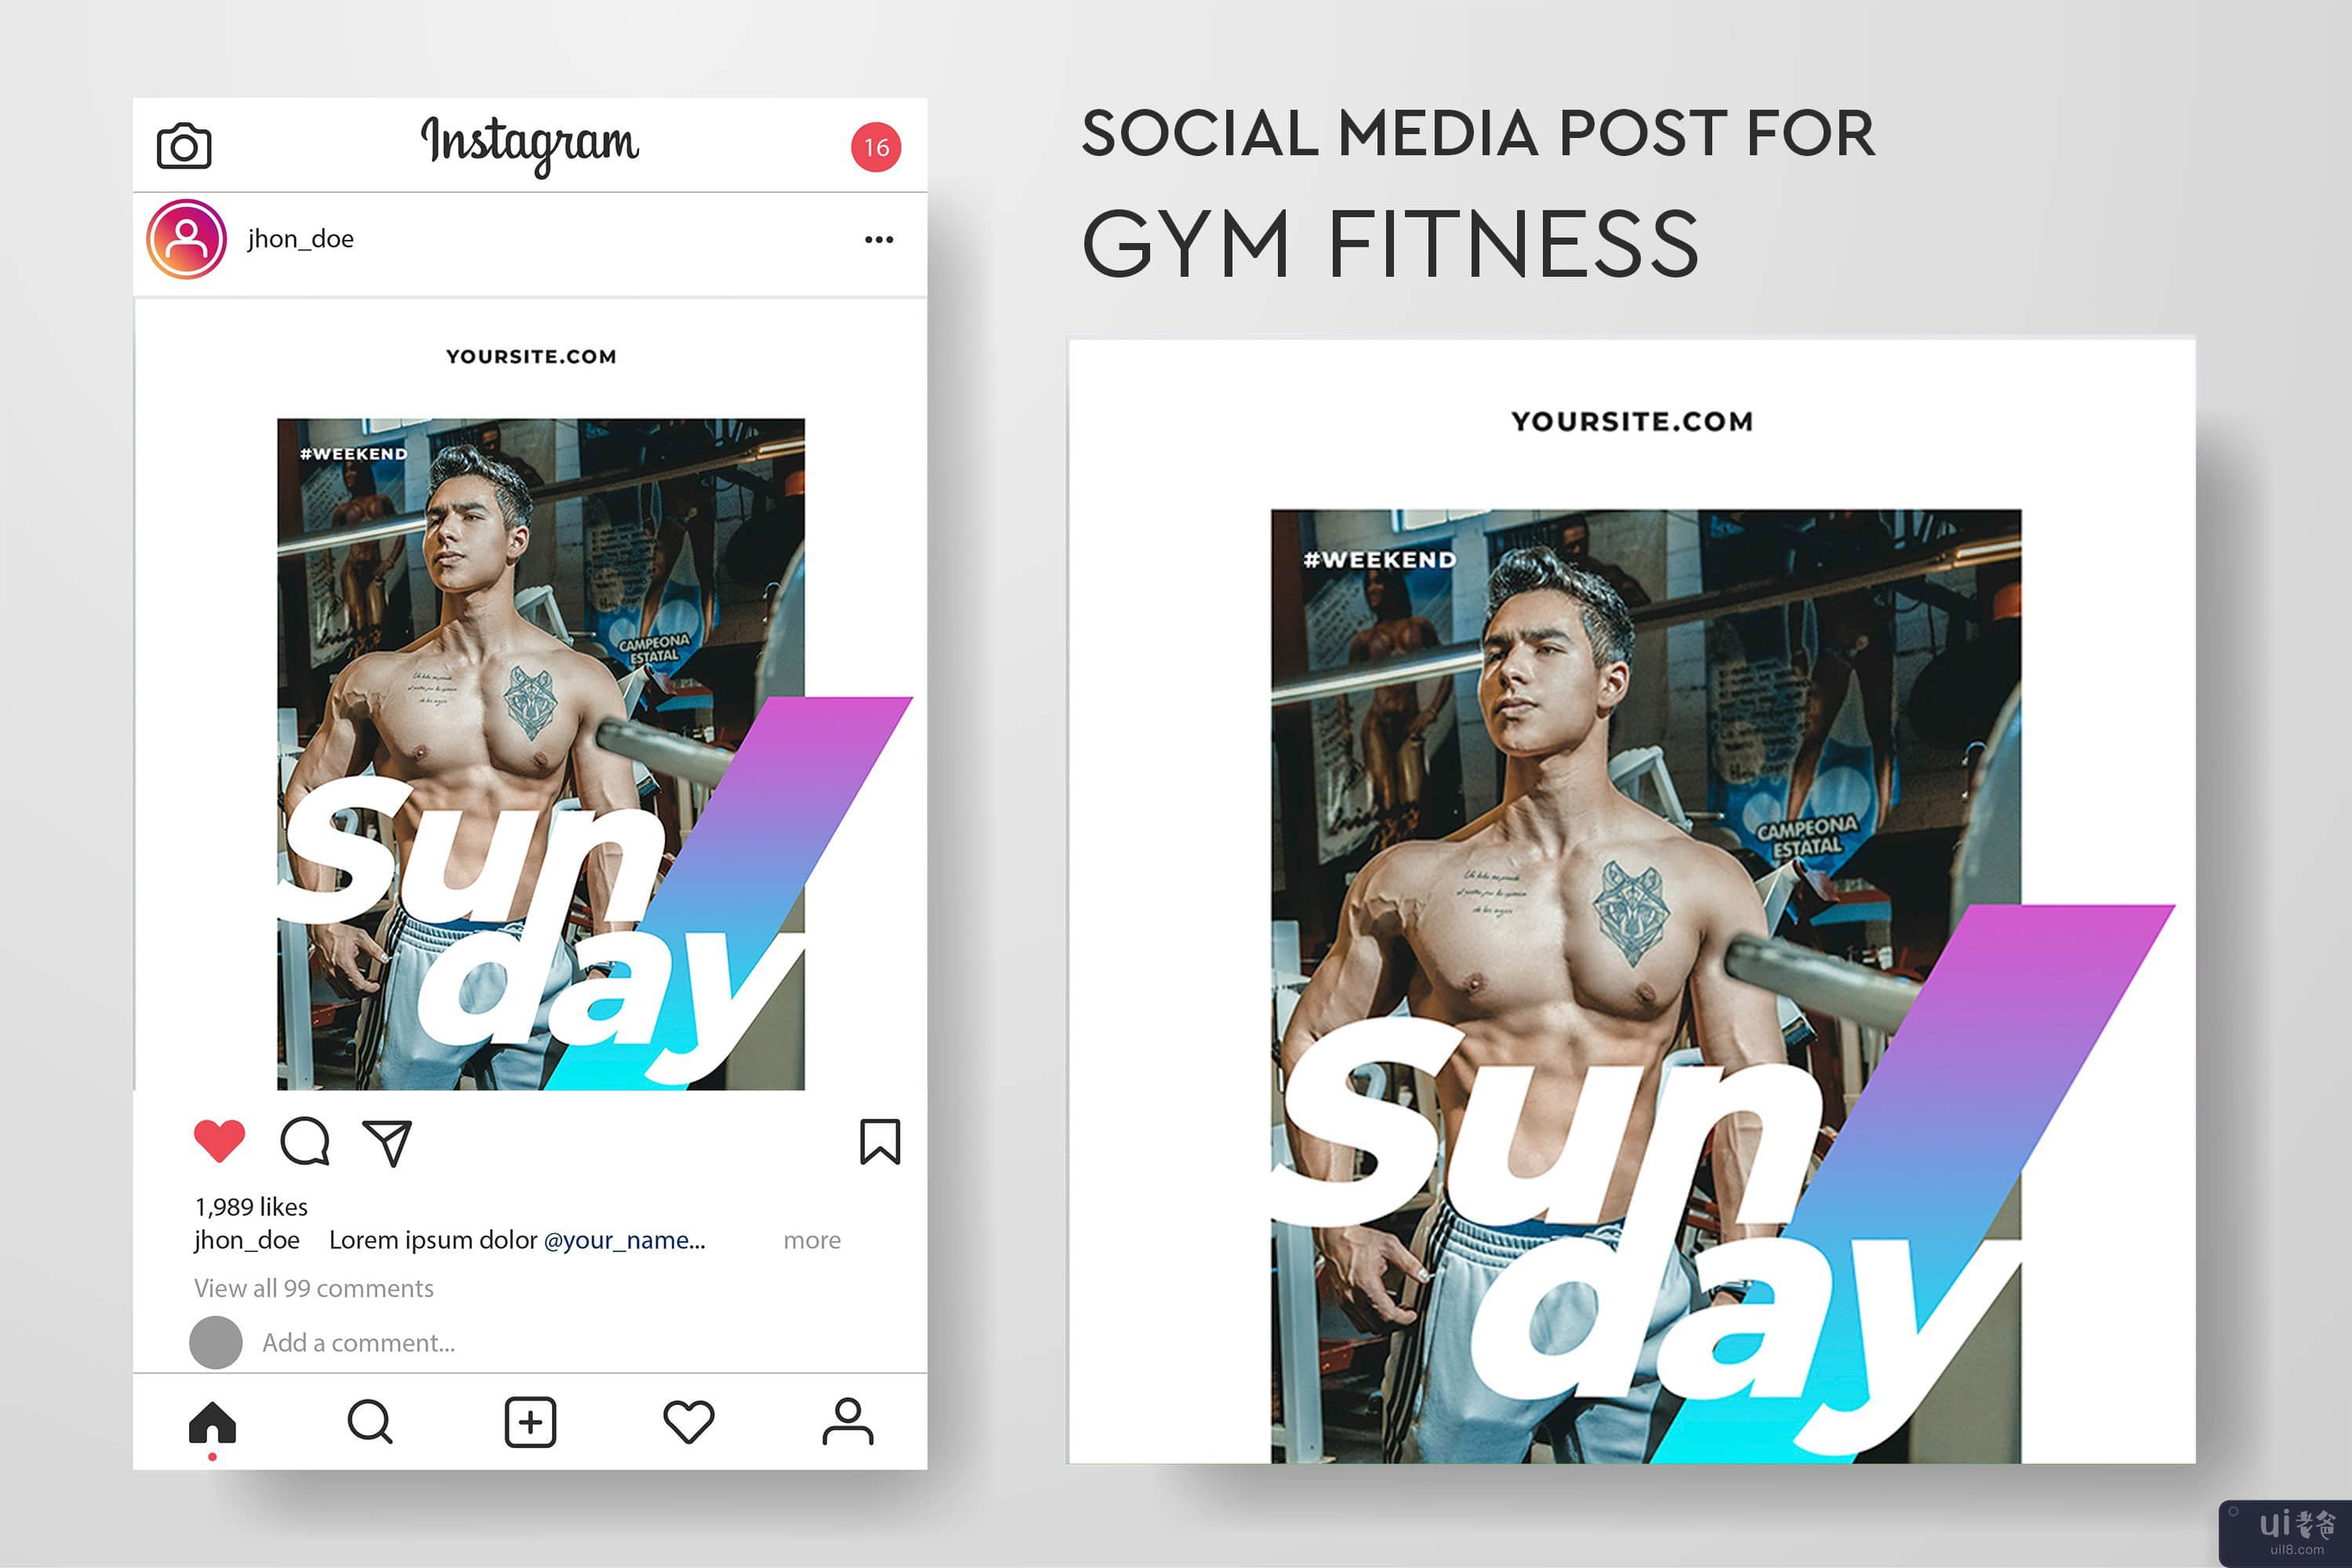 健身房健身社交媒体帖子模板集合(Gym fitness social media post templates collection)插图6